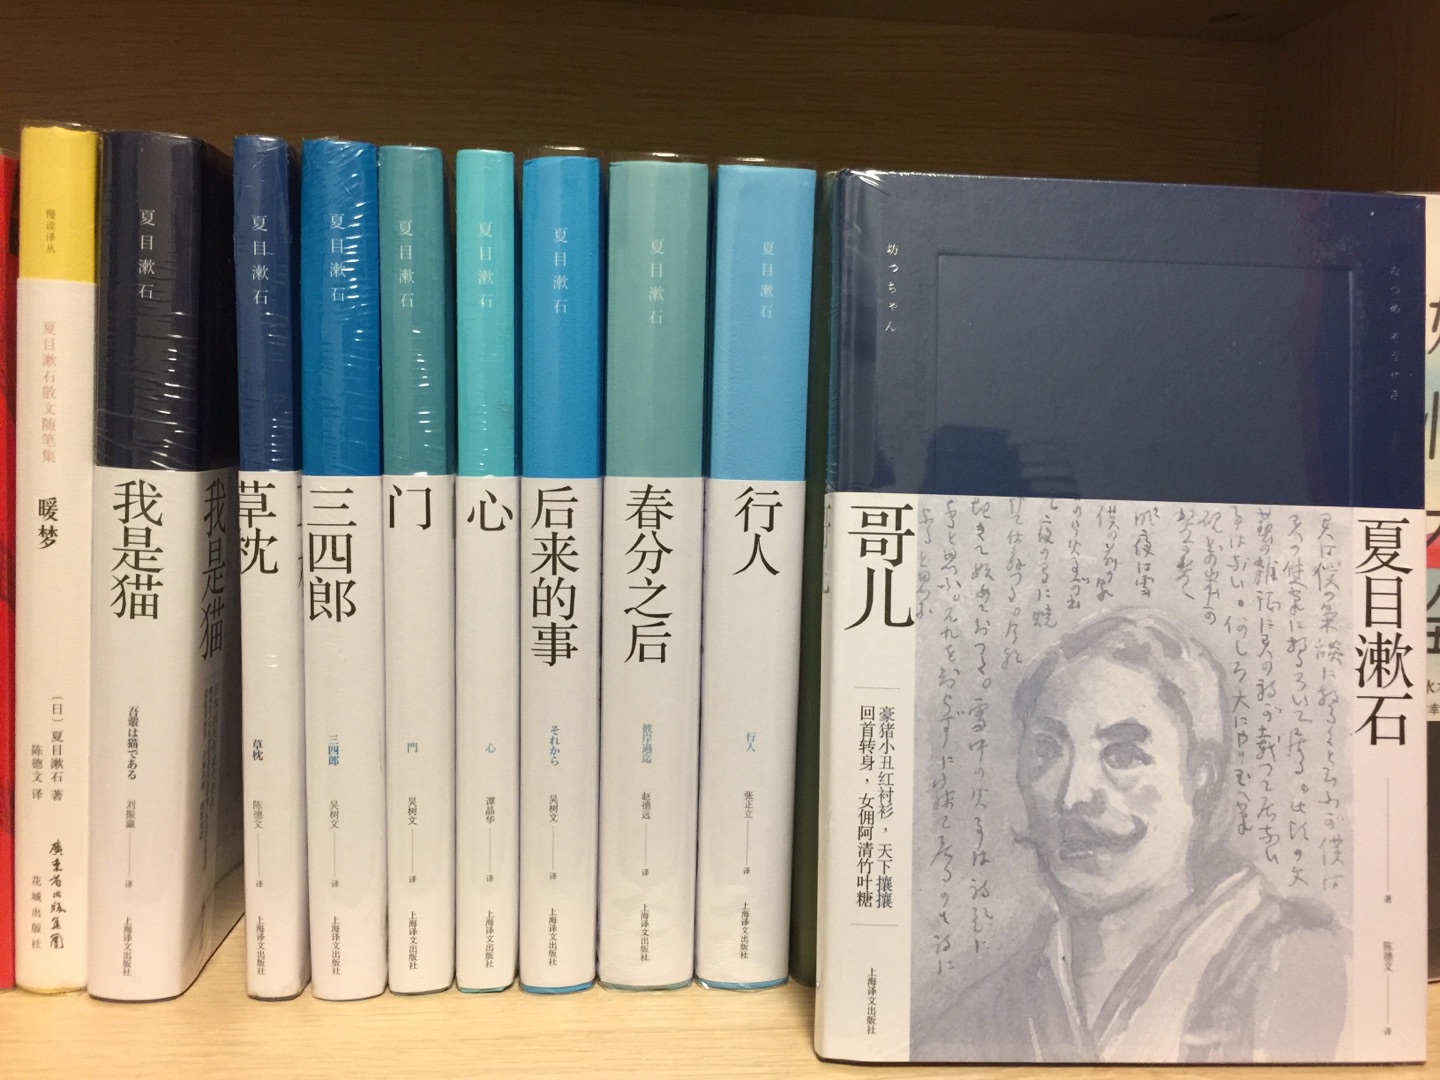 作为夏目漱石的书迷，上海译文又出了这么漂亮的一套，当然要收下。